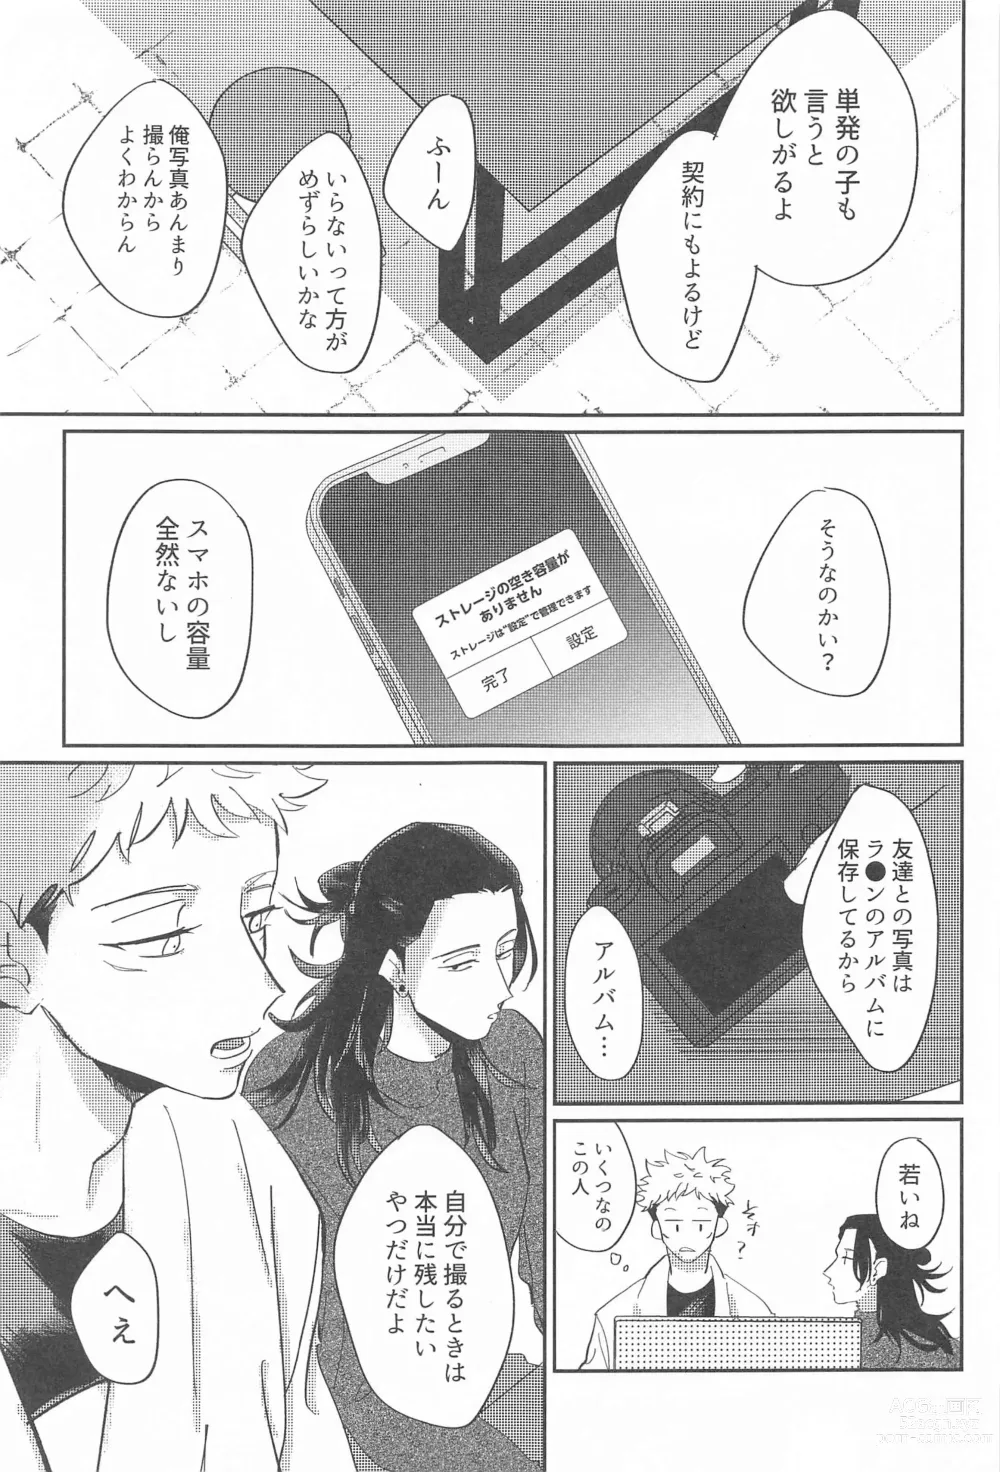 Page 14 of doujinshi Shikakukei no PENTAPRISM